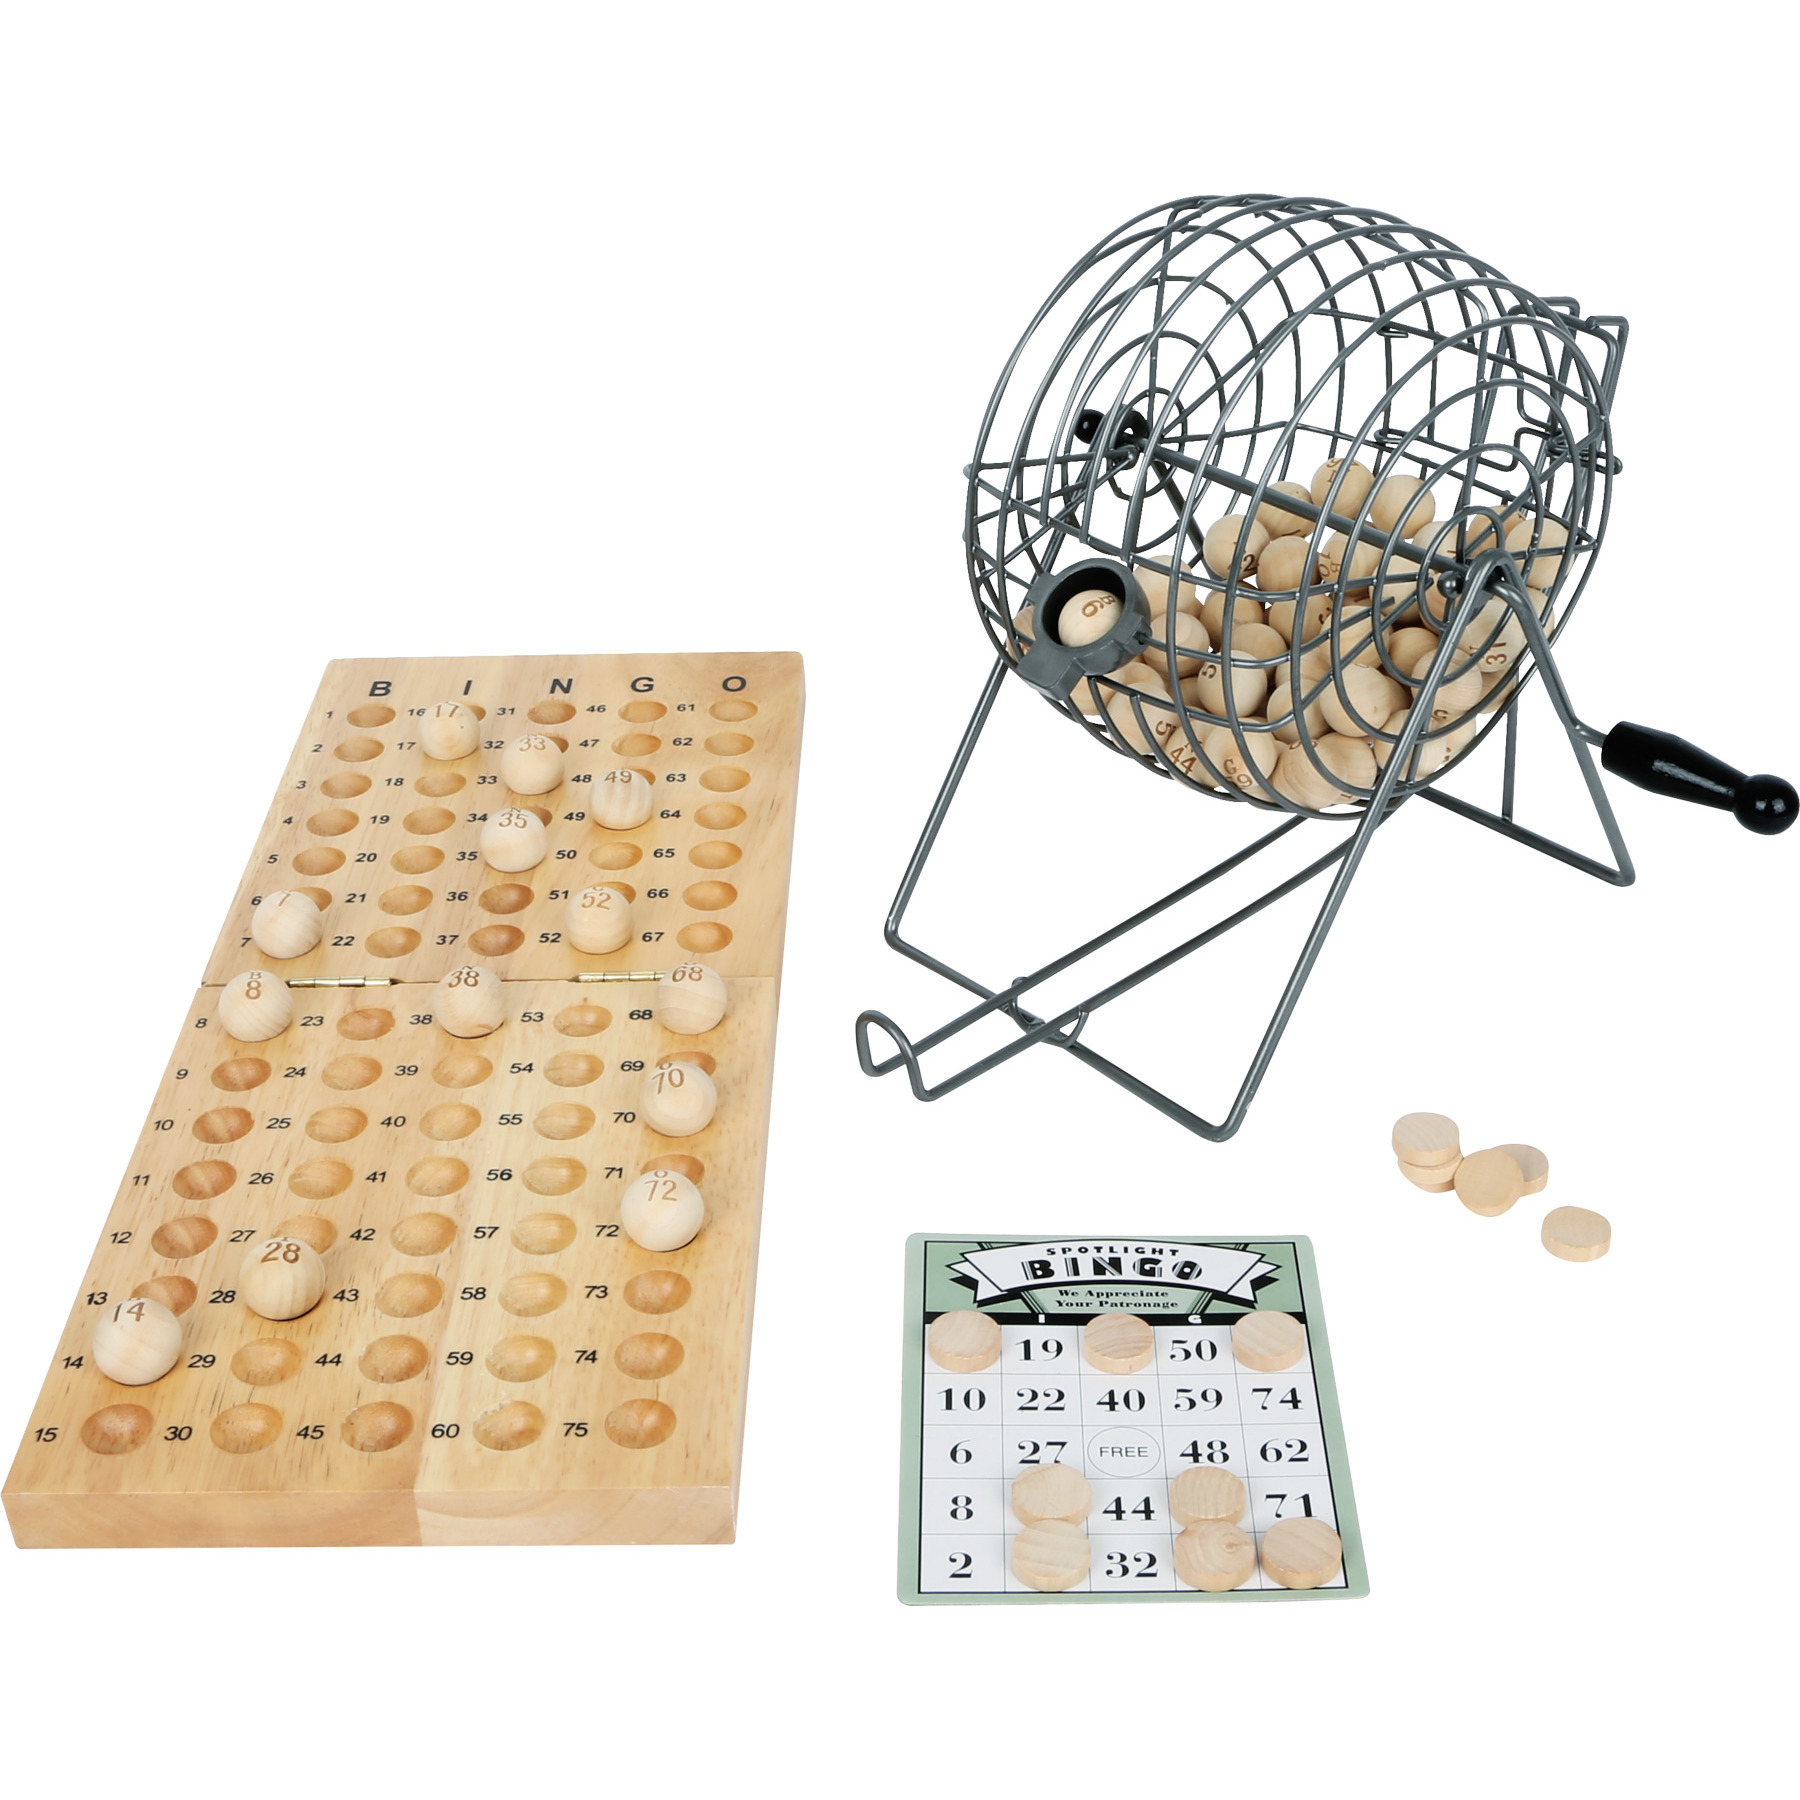 Luxe bingo spel metaal/hout complete set nummers 1-75 met molen en bingokaarten